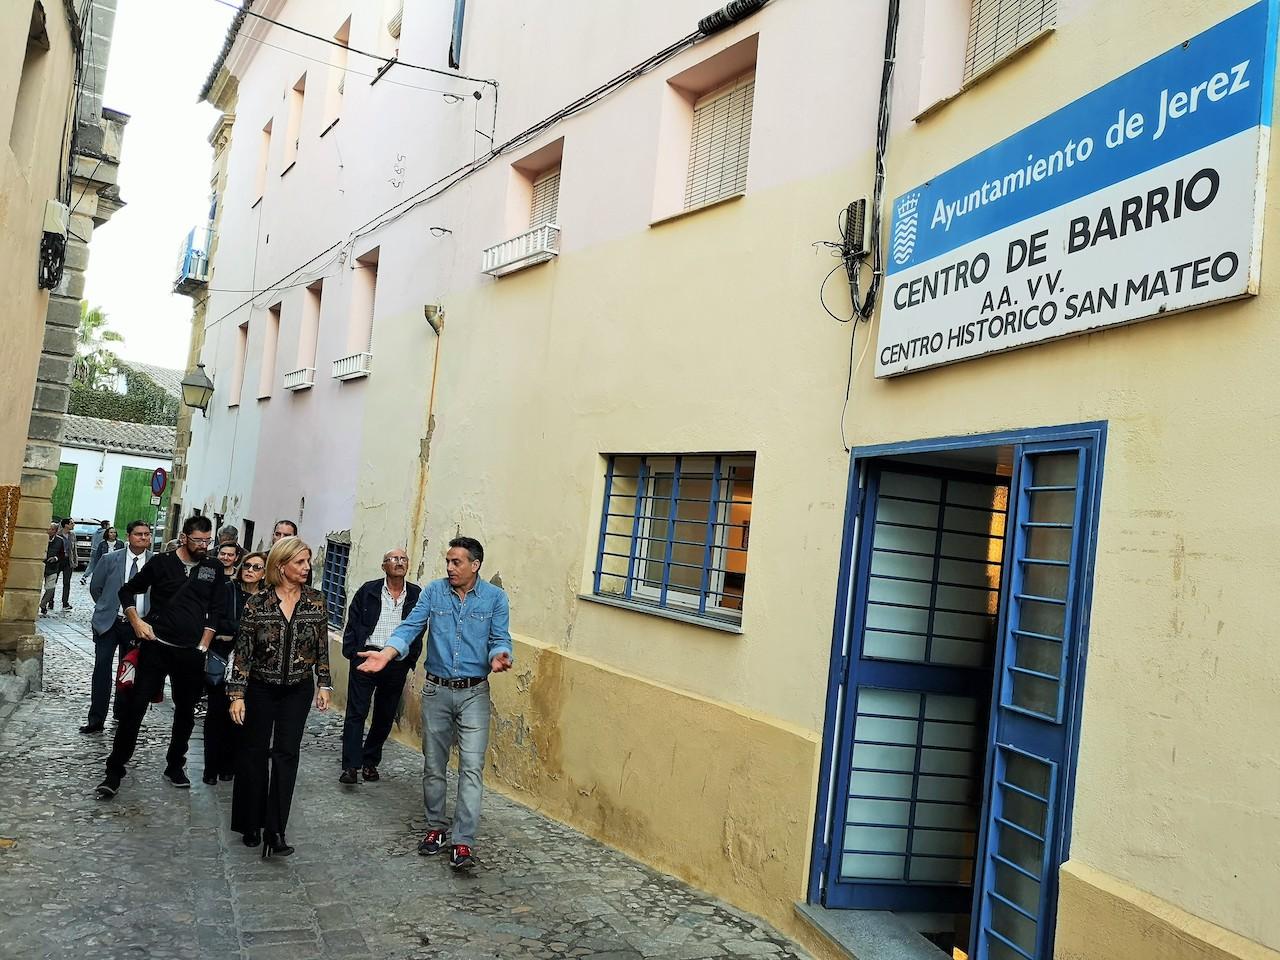 Pelayo cree que el Centro Histórico de Jerez "necesita vida y una buena planificación a futuro"